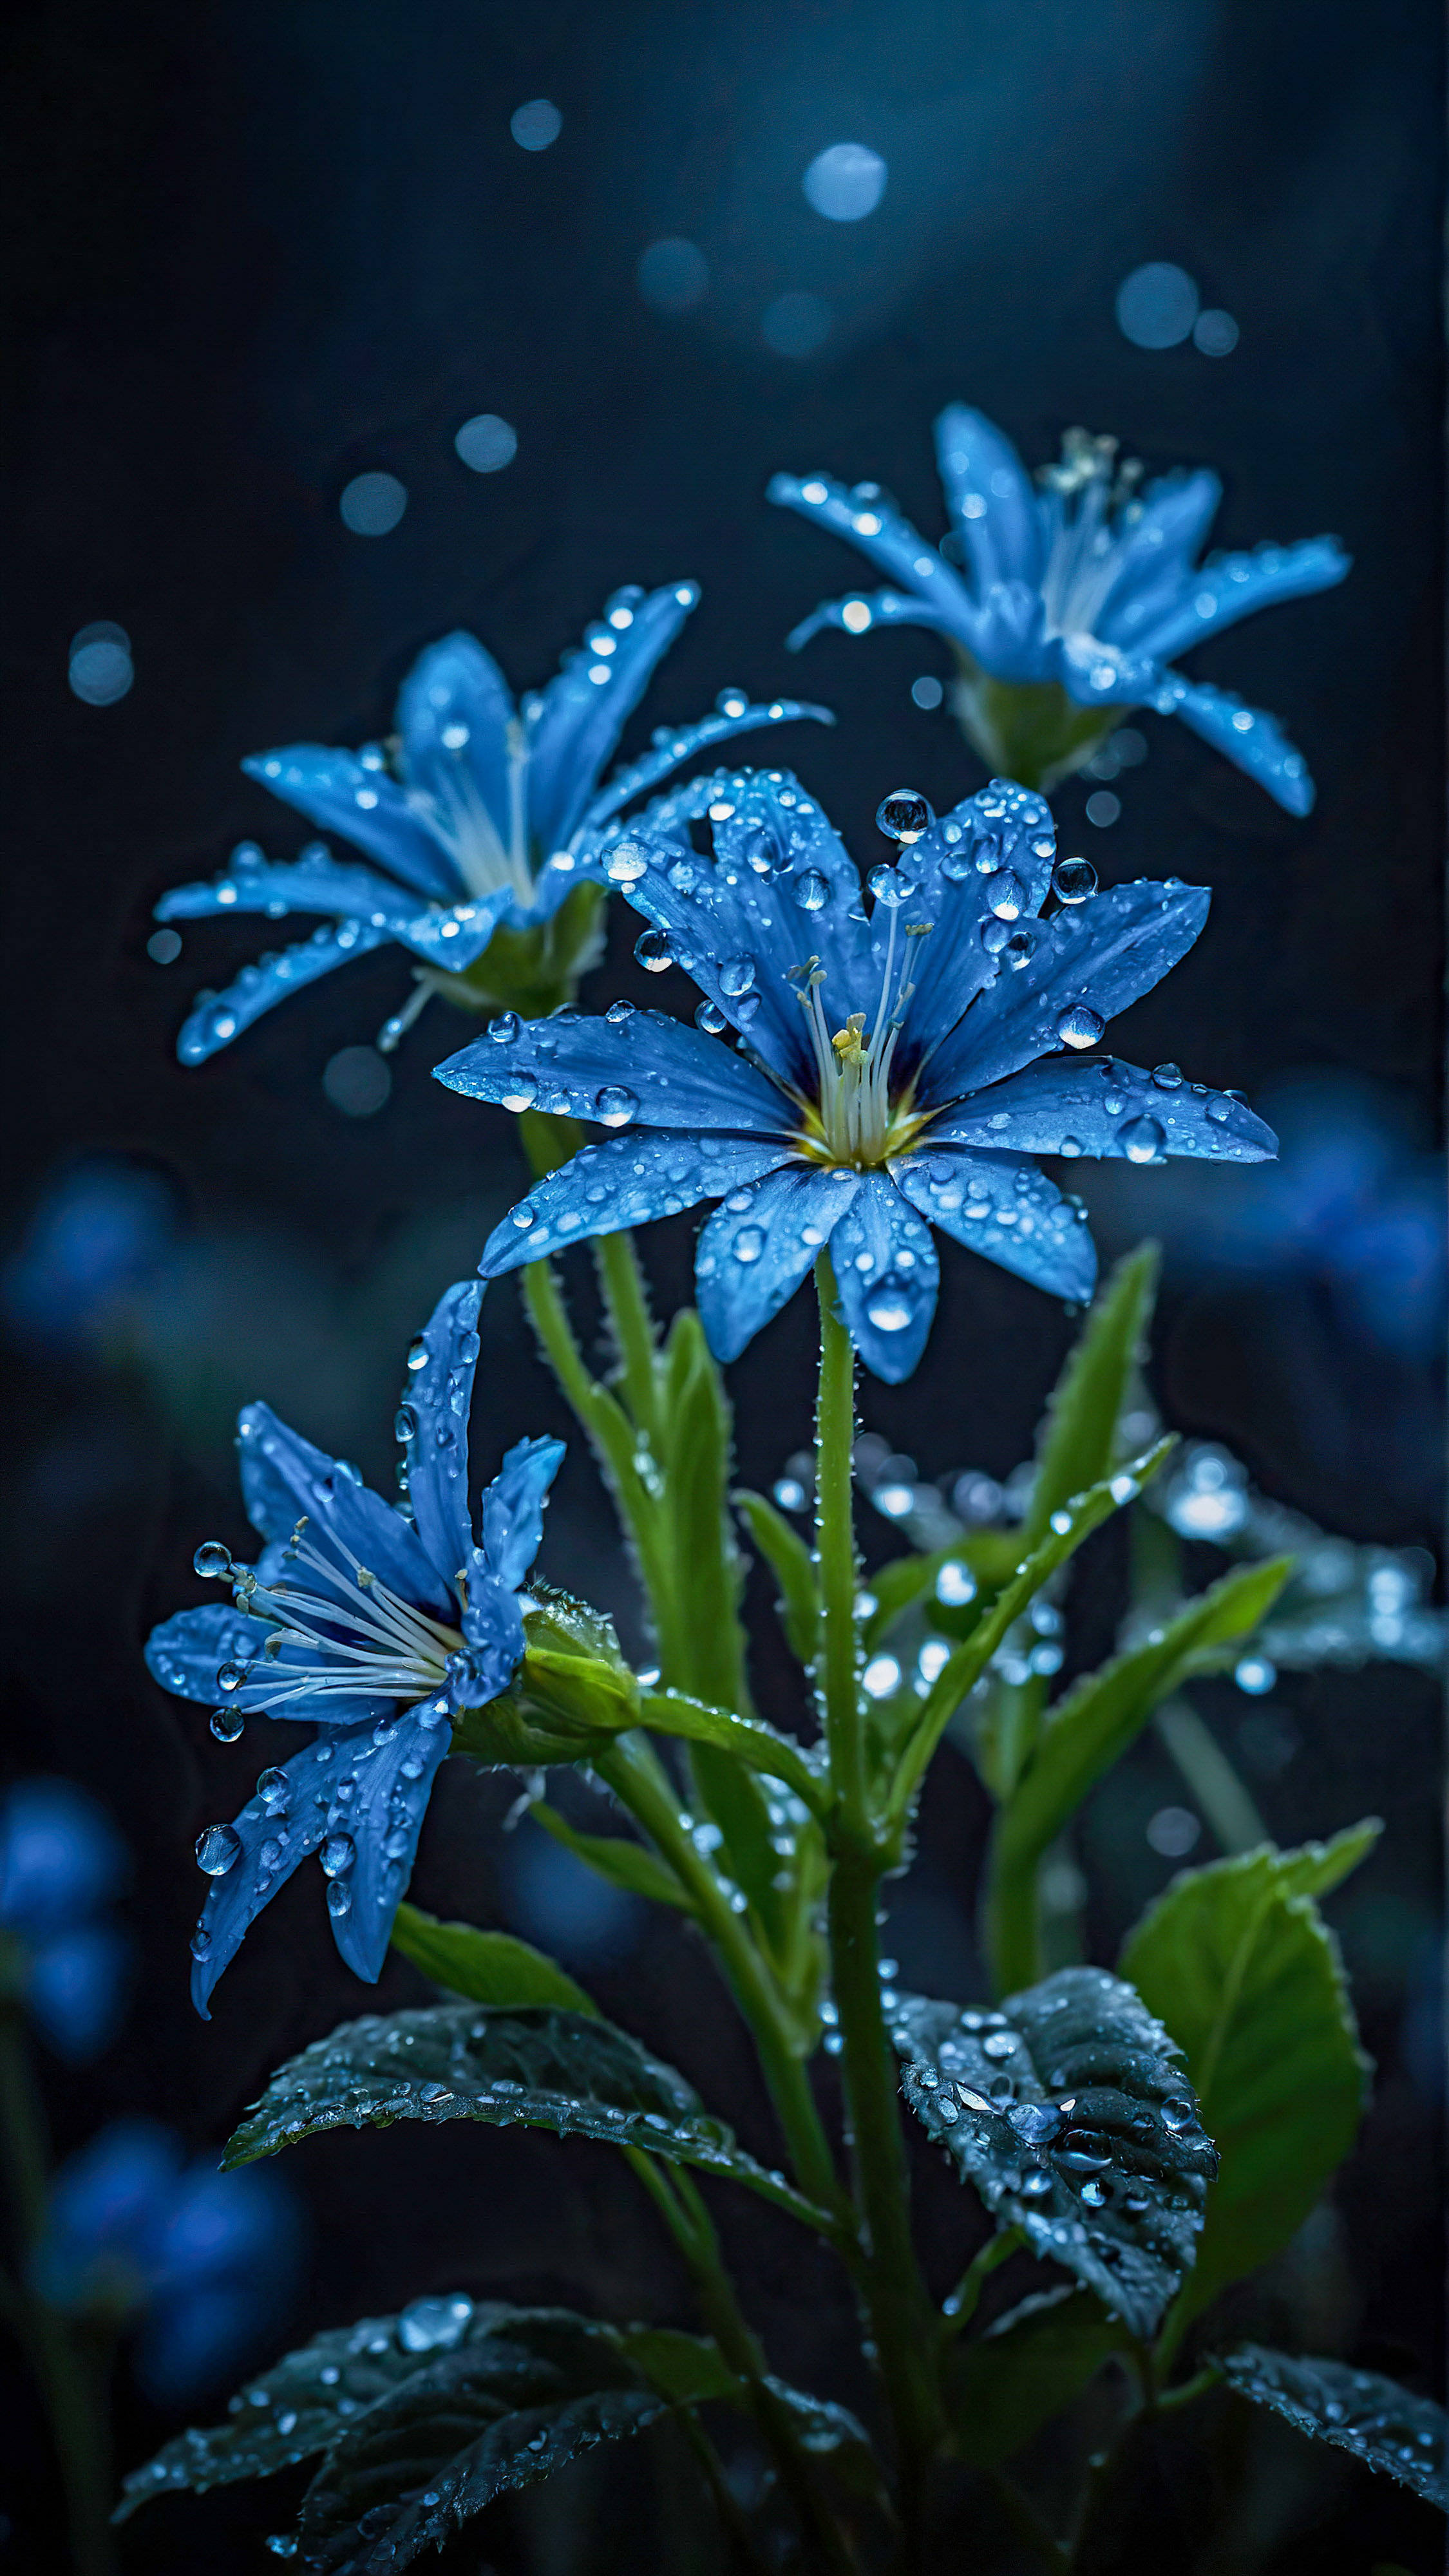 Vivez la tranquillité de la nature avec notre beau fond d'écran iPhone, une scène sereine et mystique de fleurs bleues lumineuses avec des gouttes de rosée, sur un fond sombre et flou.